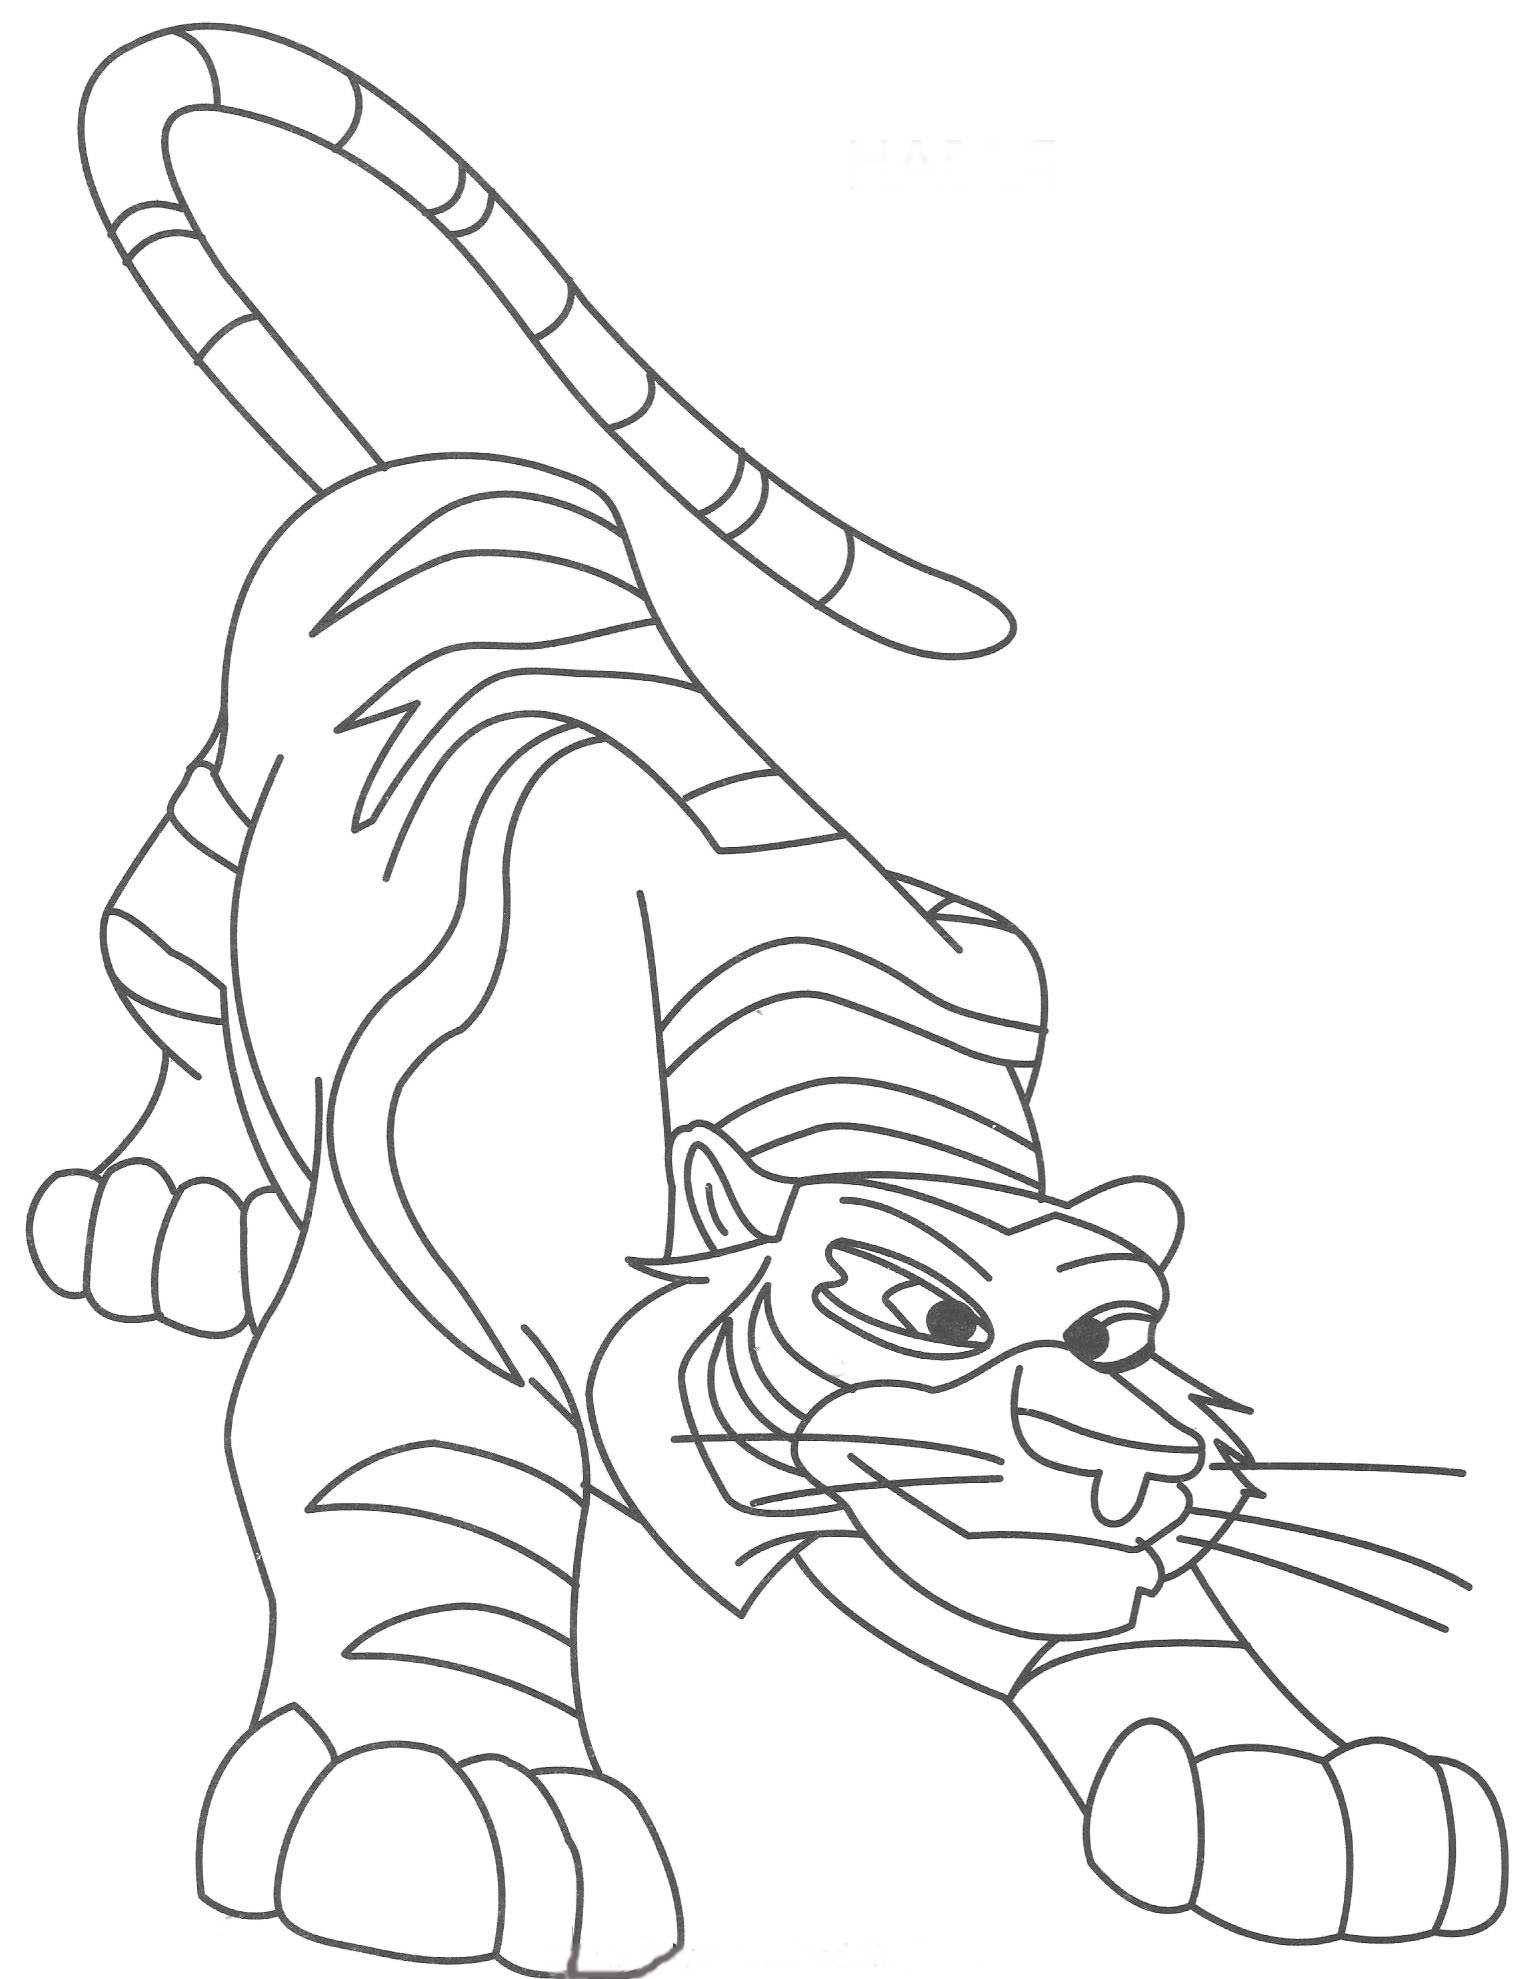 Раскраска лео и тиг. Лео и тигр раскраска. Тигр и Лео раскраска для детей. Тигр раскраска для детей. Раскраски для детей Део и Тиг.